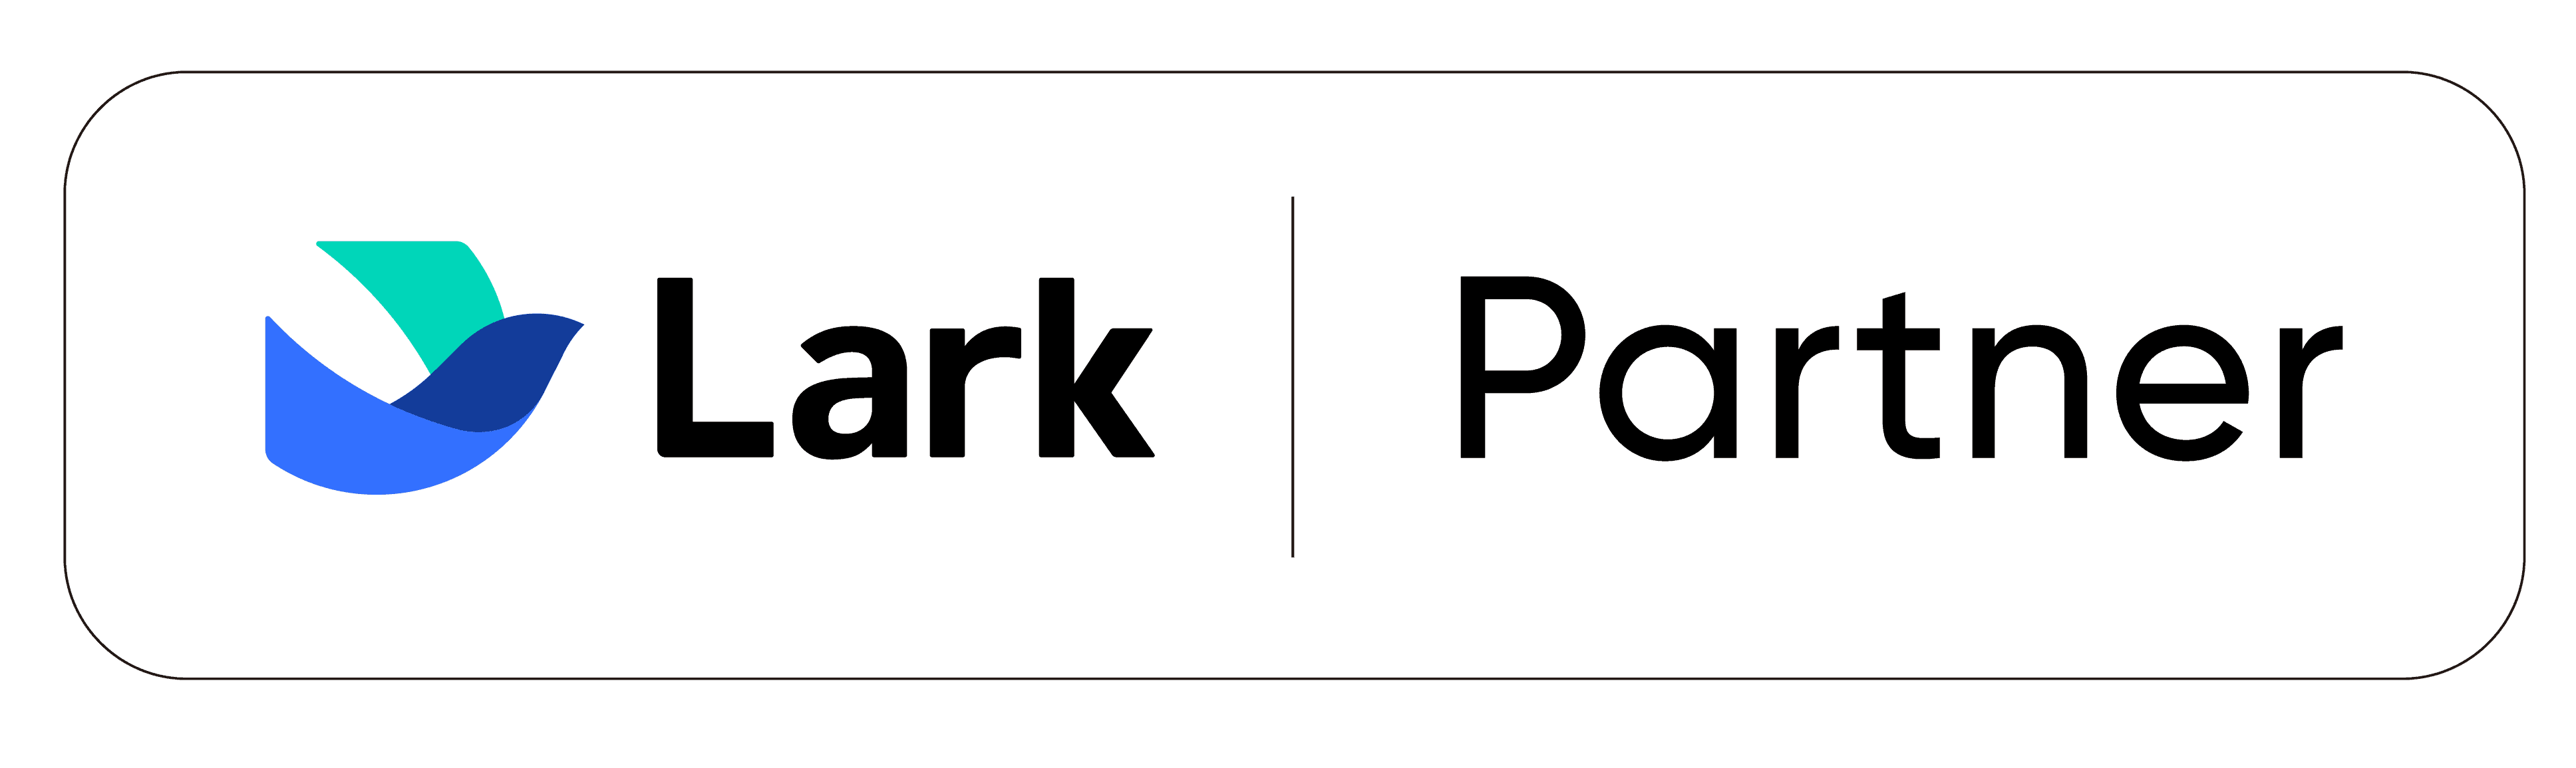 Lark-Partner-logo